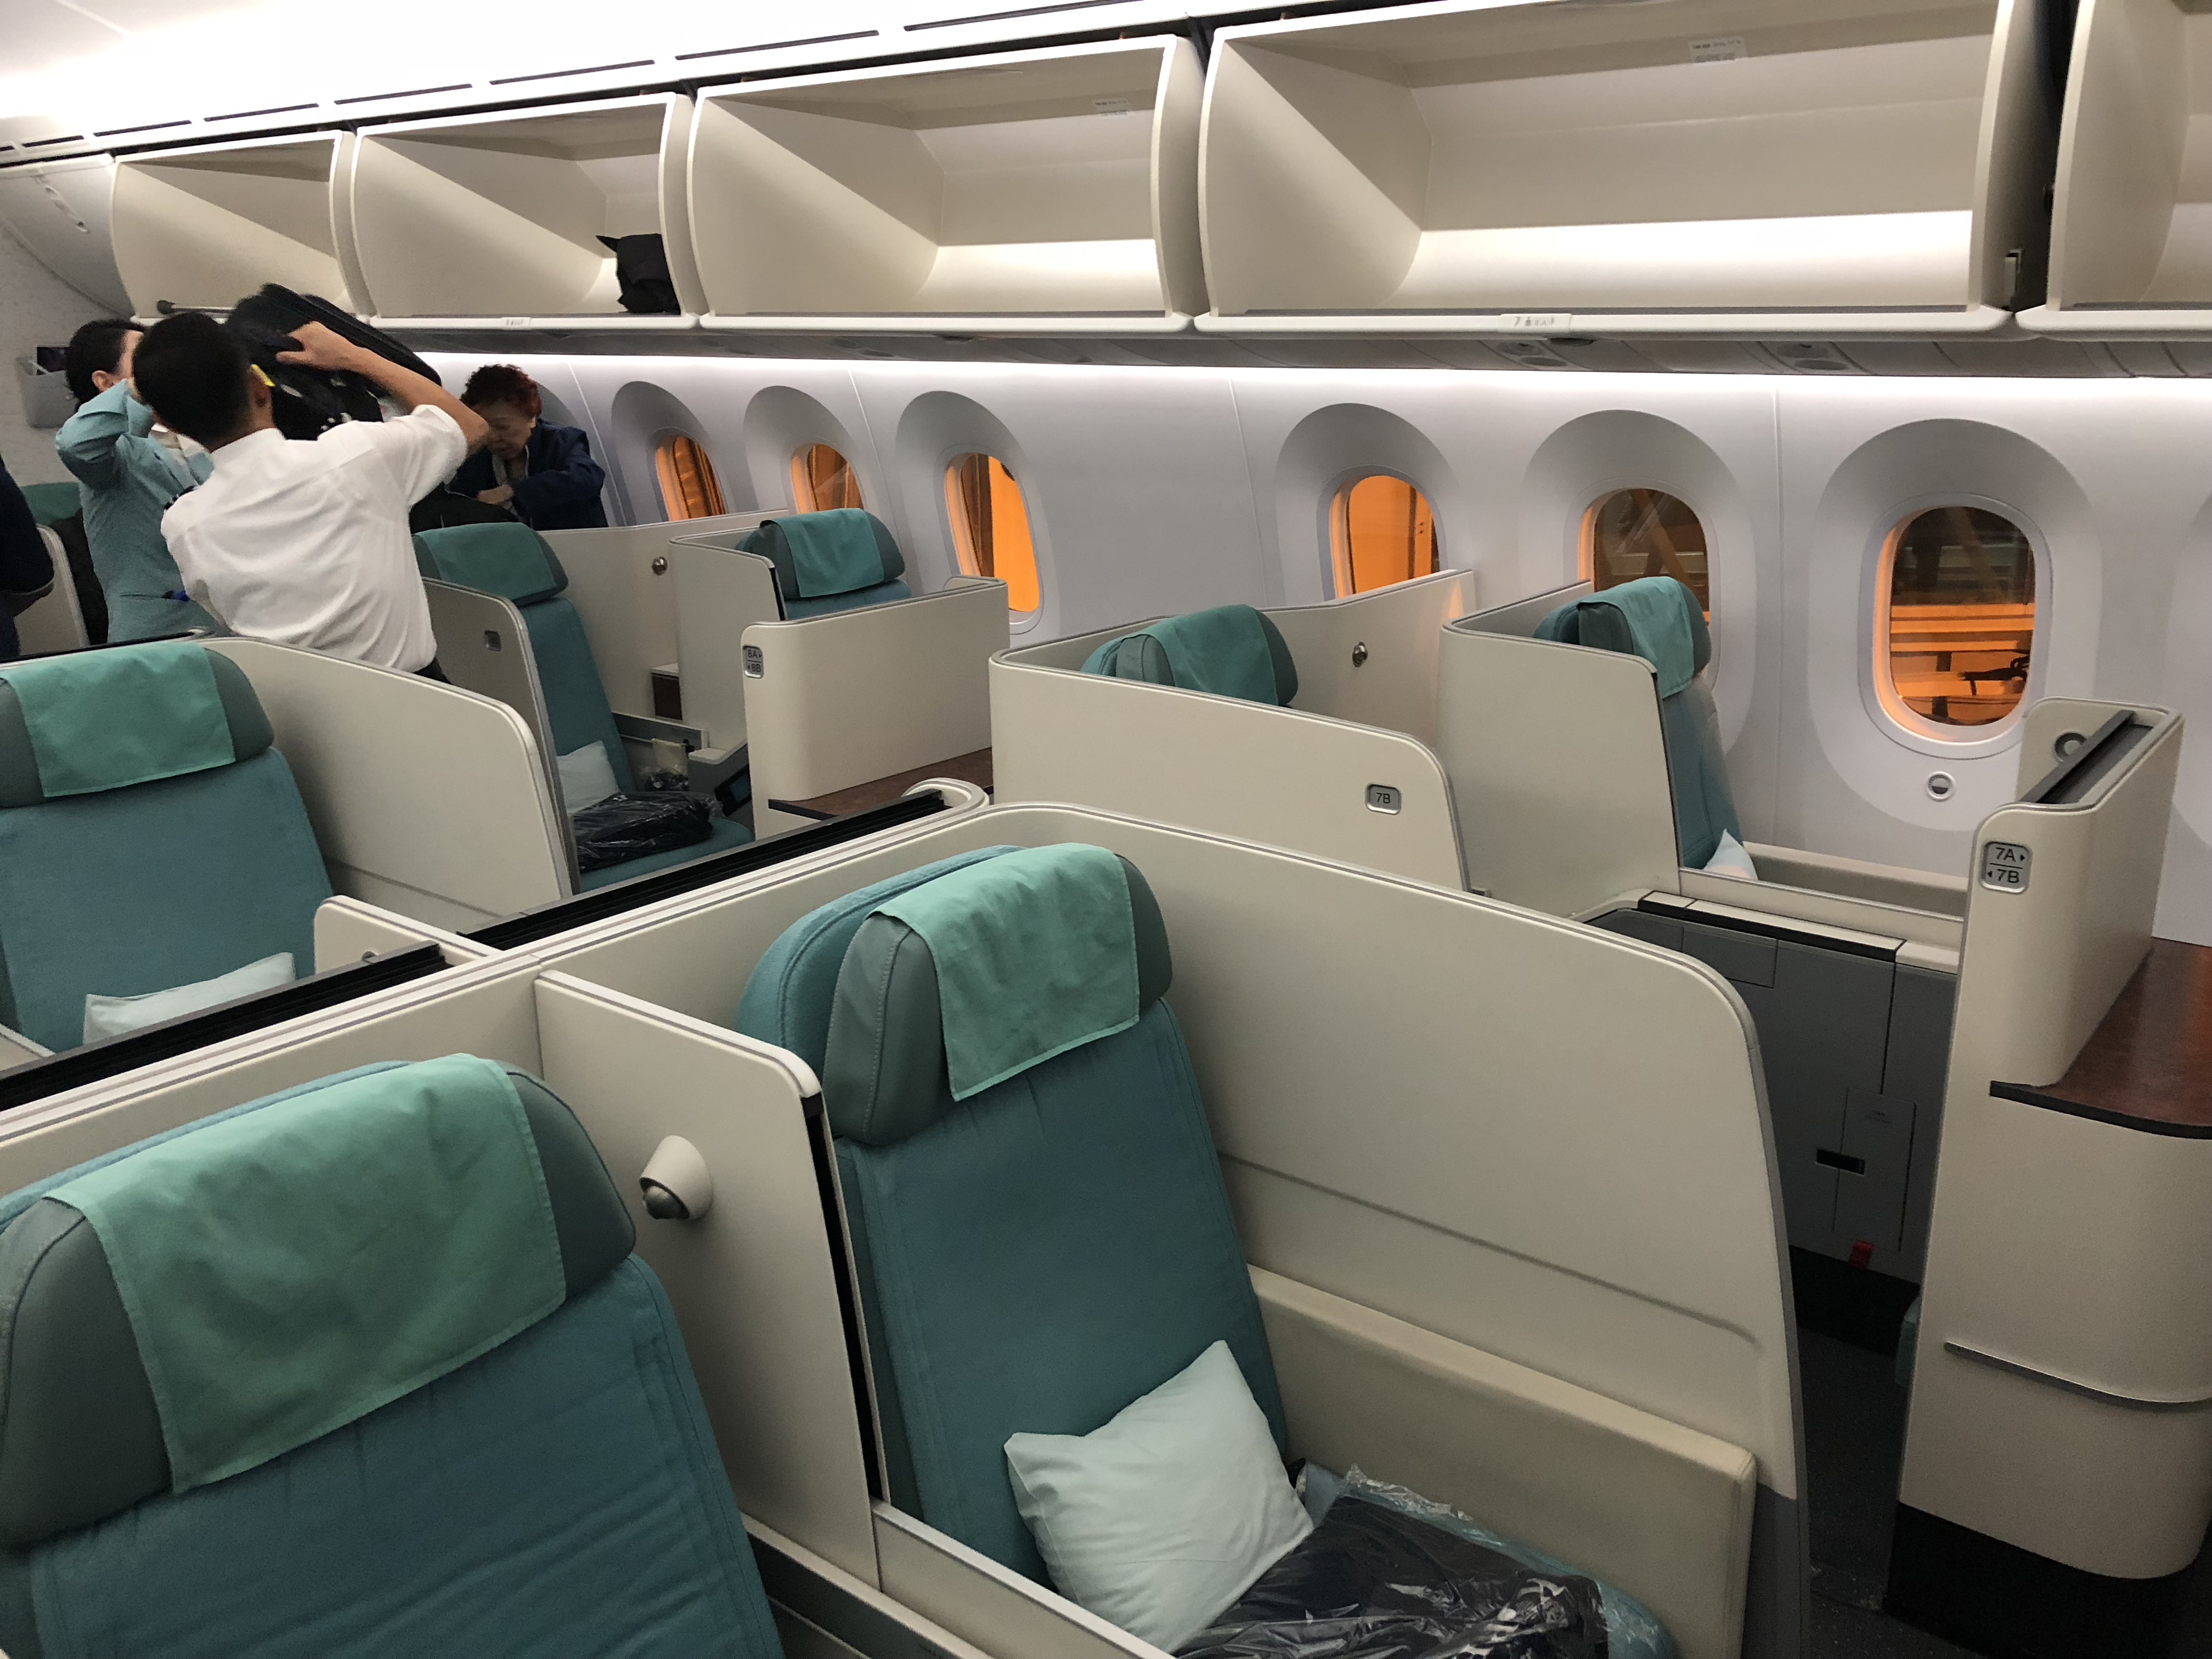 Flight Review Seoul To Hong Kong In Korean Air Business